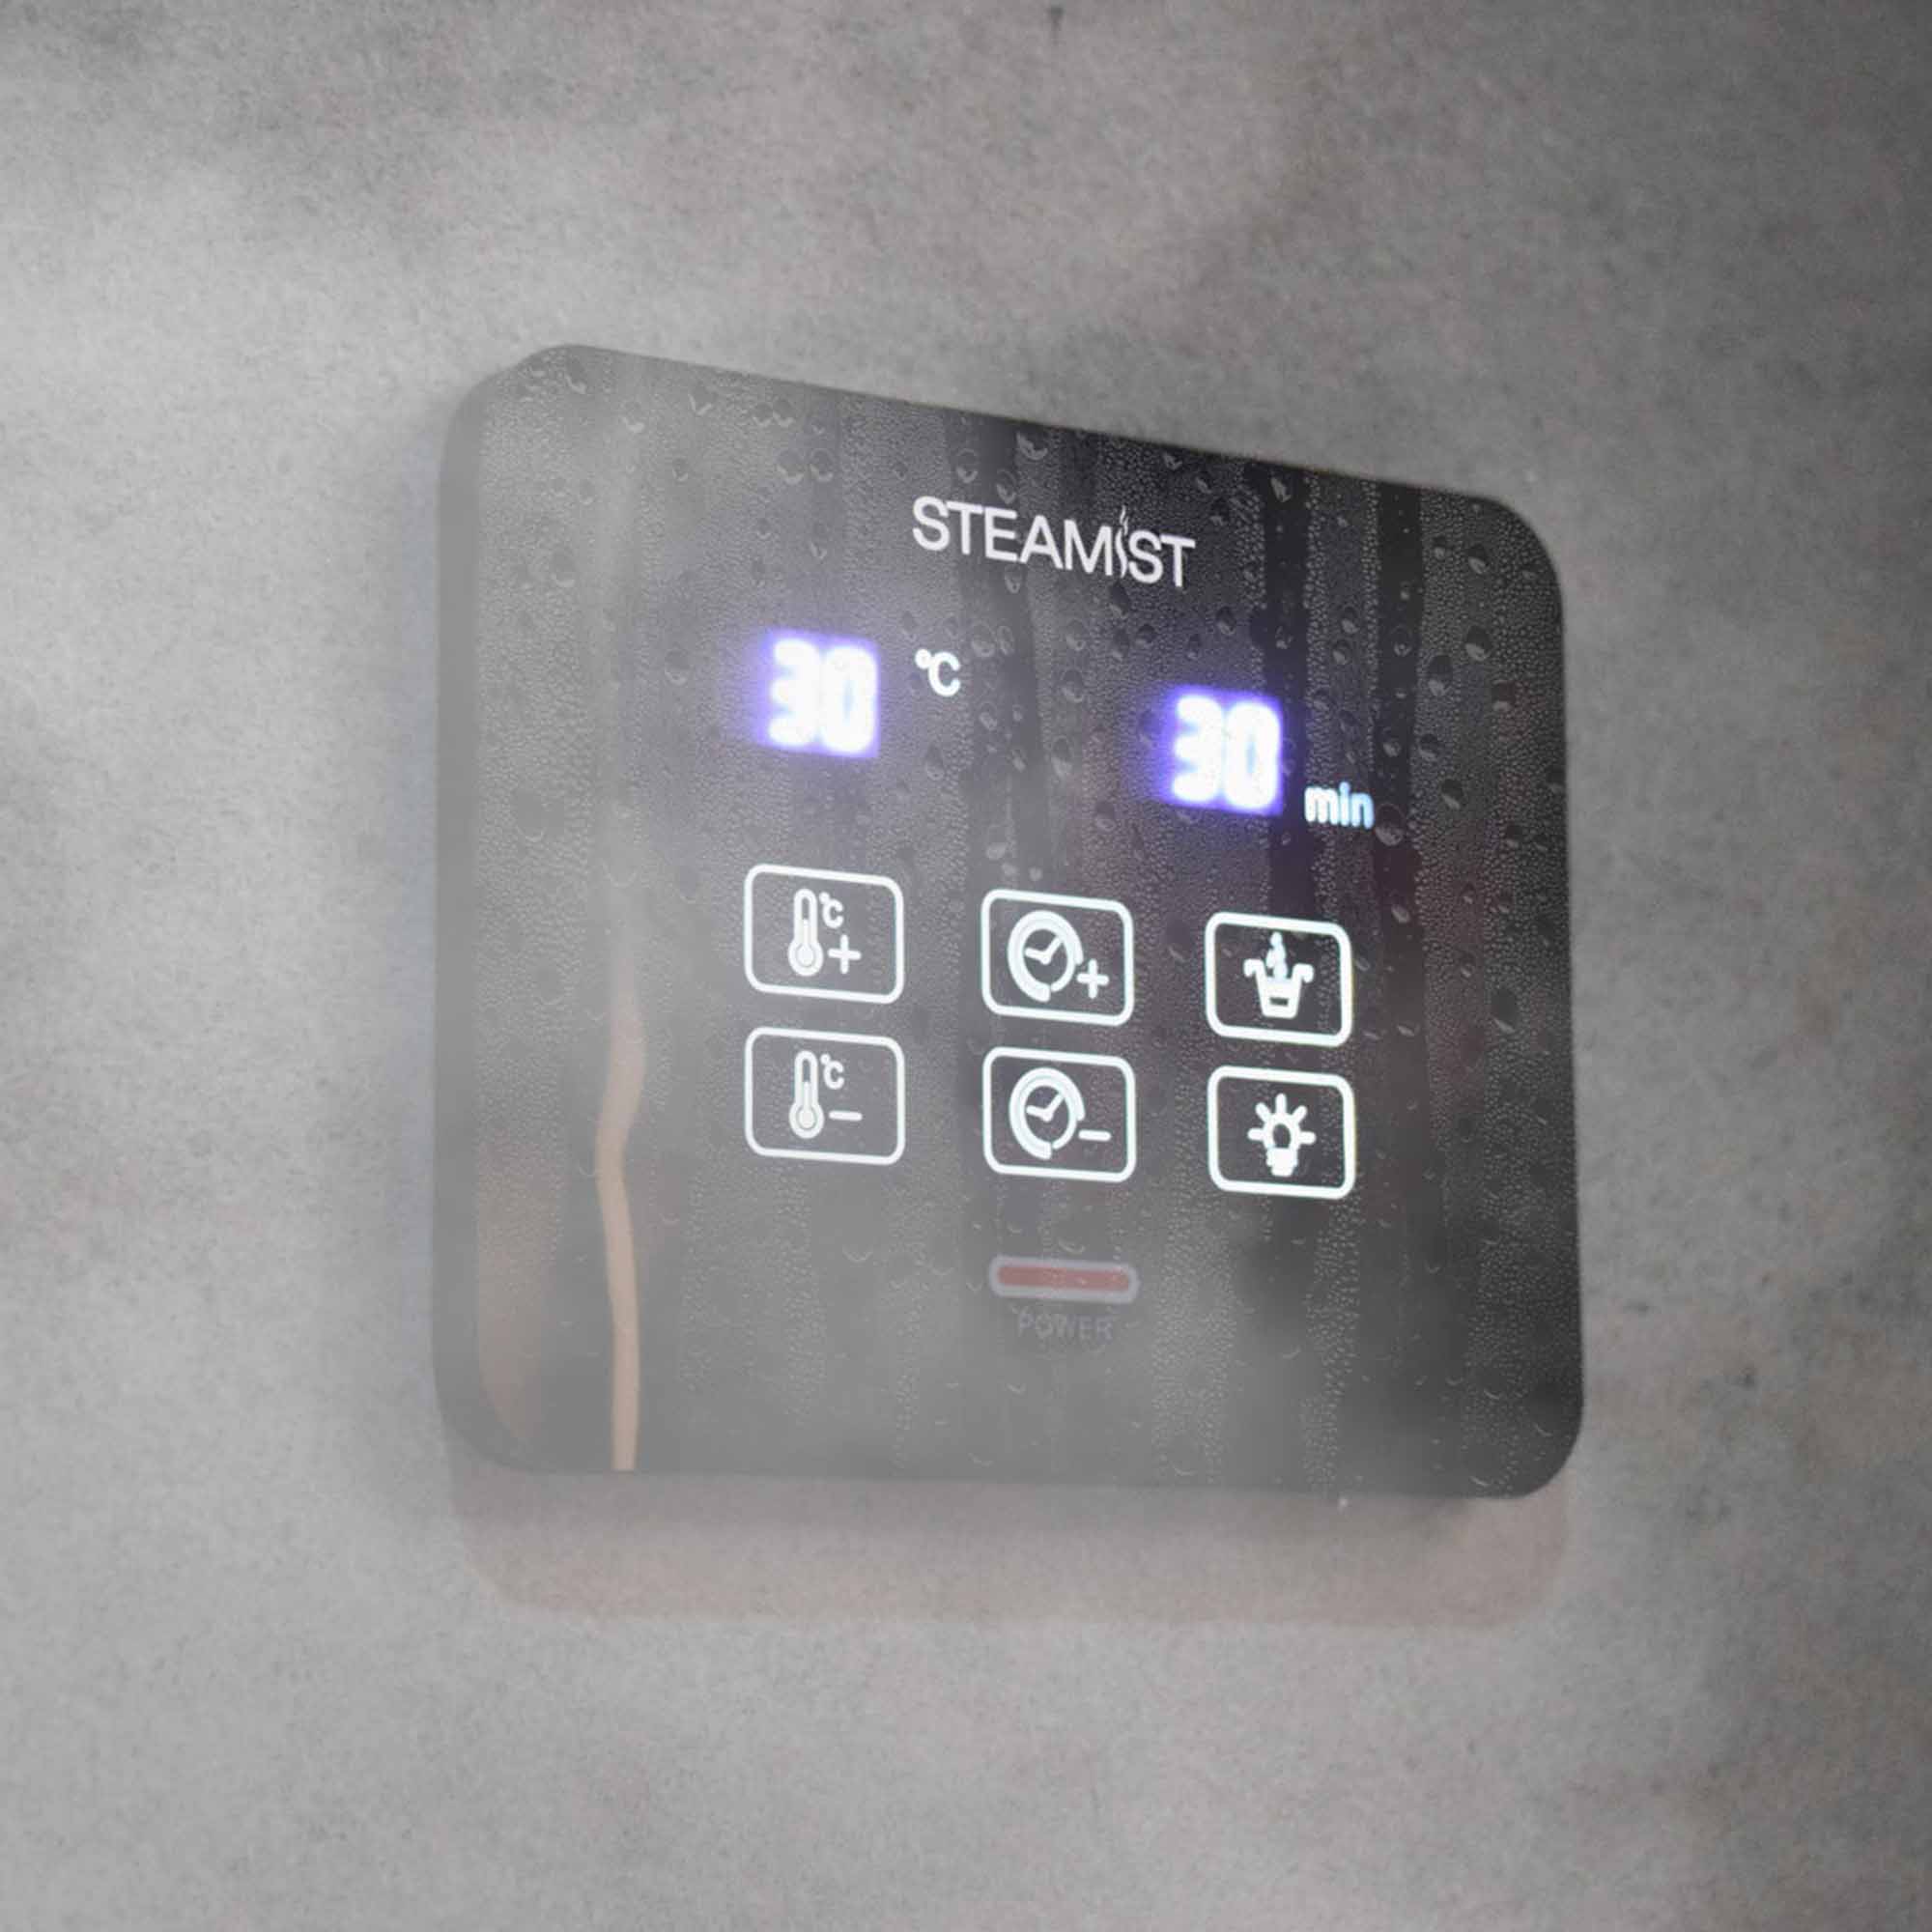 steamist steam shower generator kit matt black